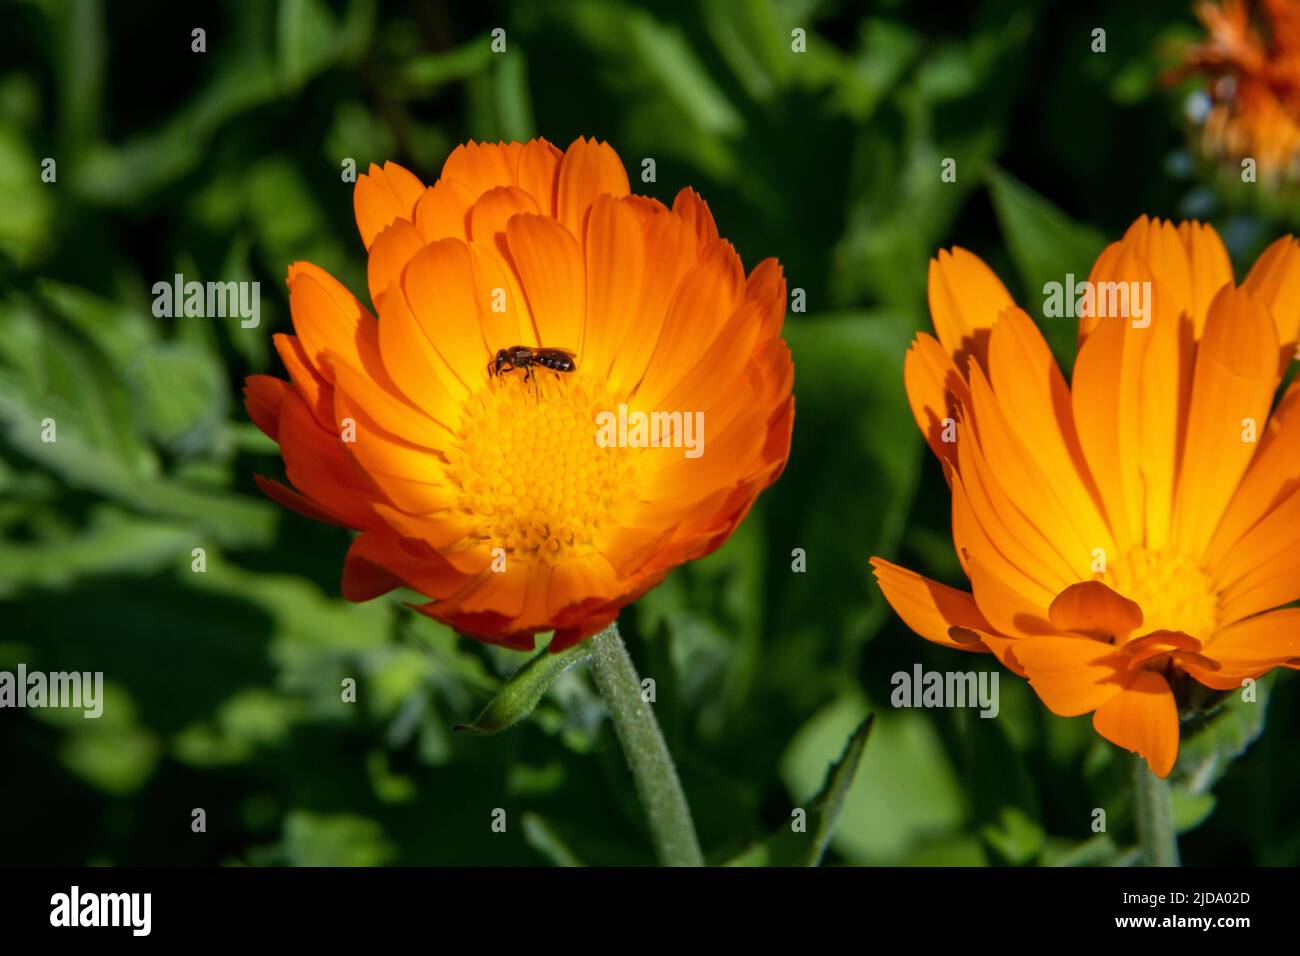 Gänseblümchen blüht in warmer orange Farbe mit einer bestäubenden Biene Stockfoto